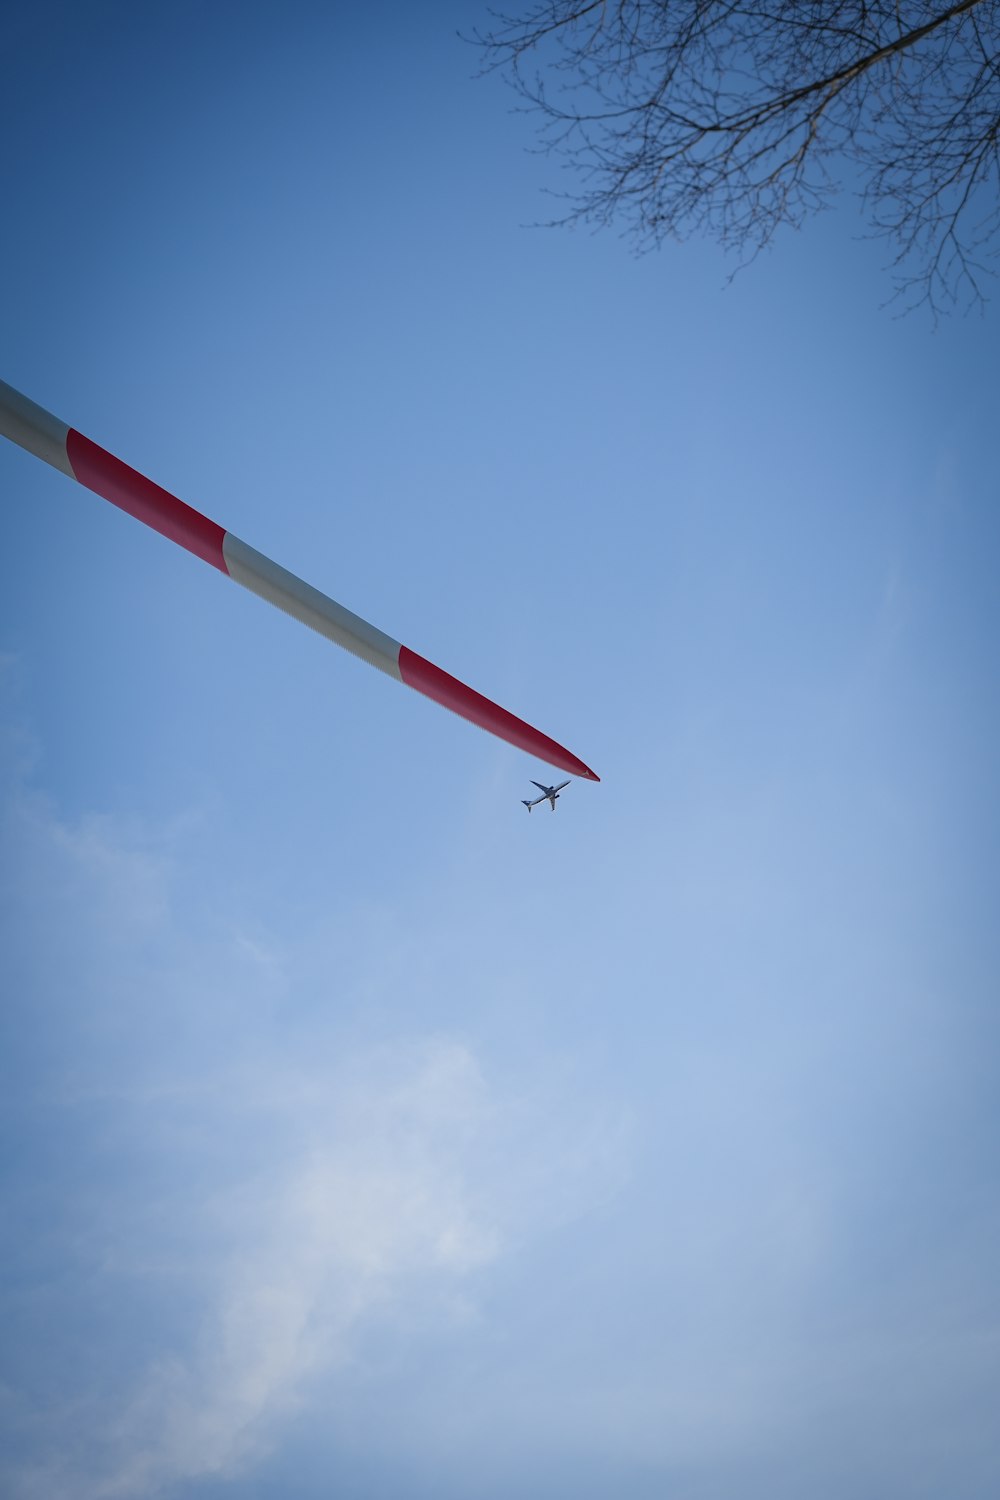 Un avión volando en el cielo con una franja roja y blanca